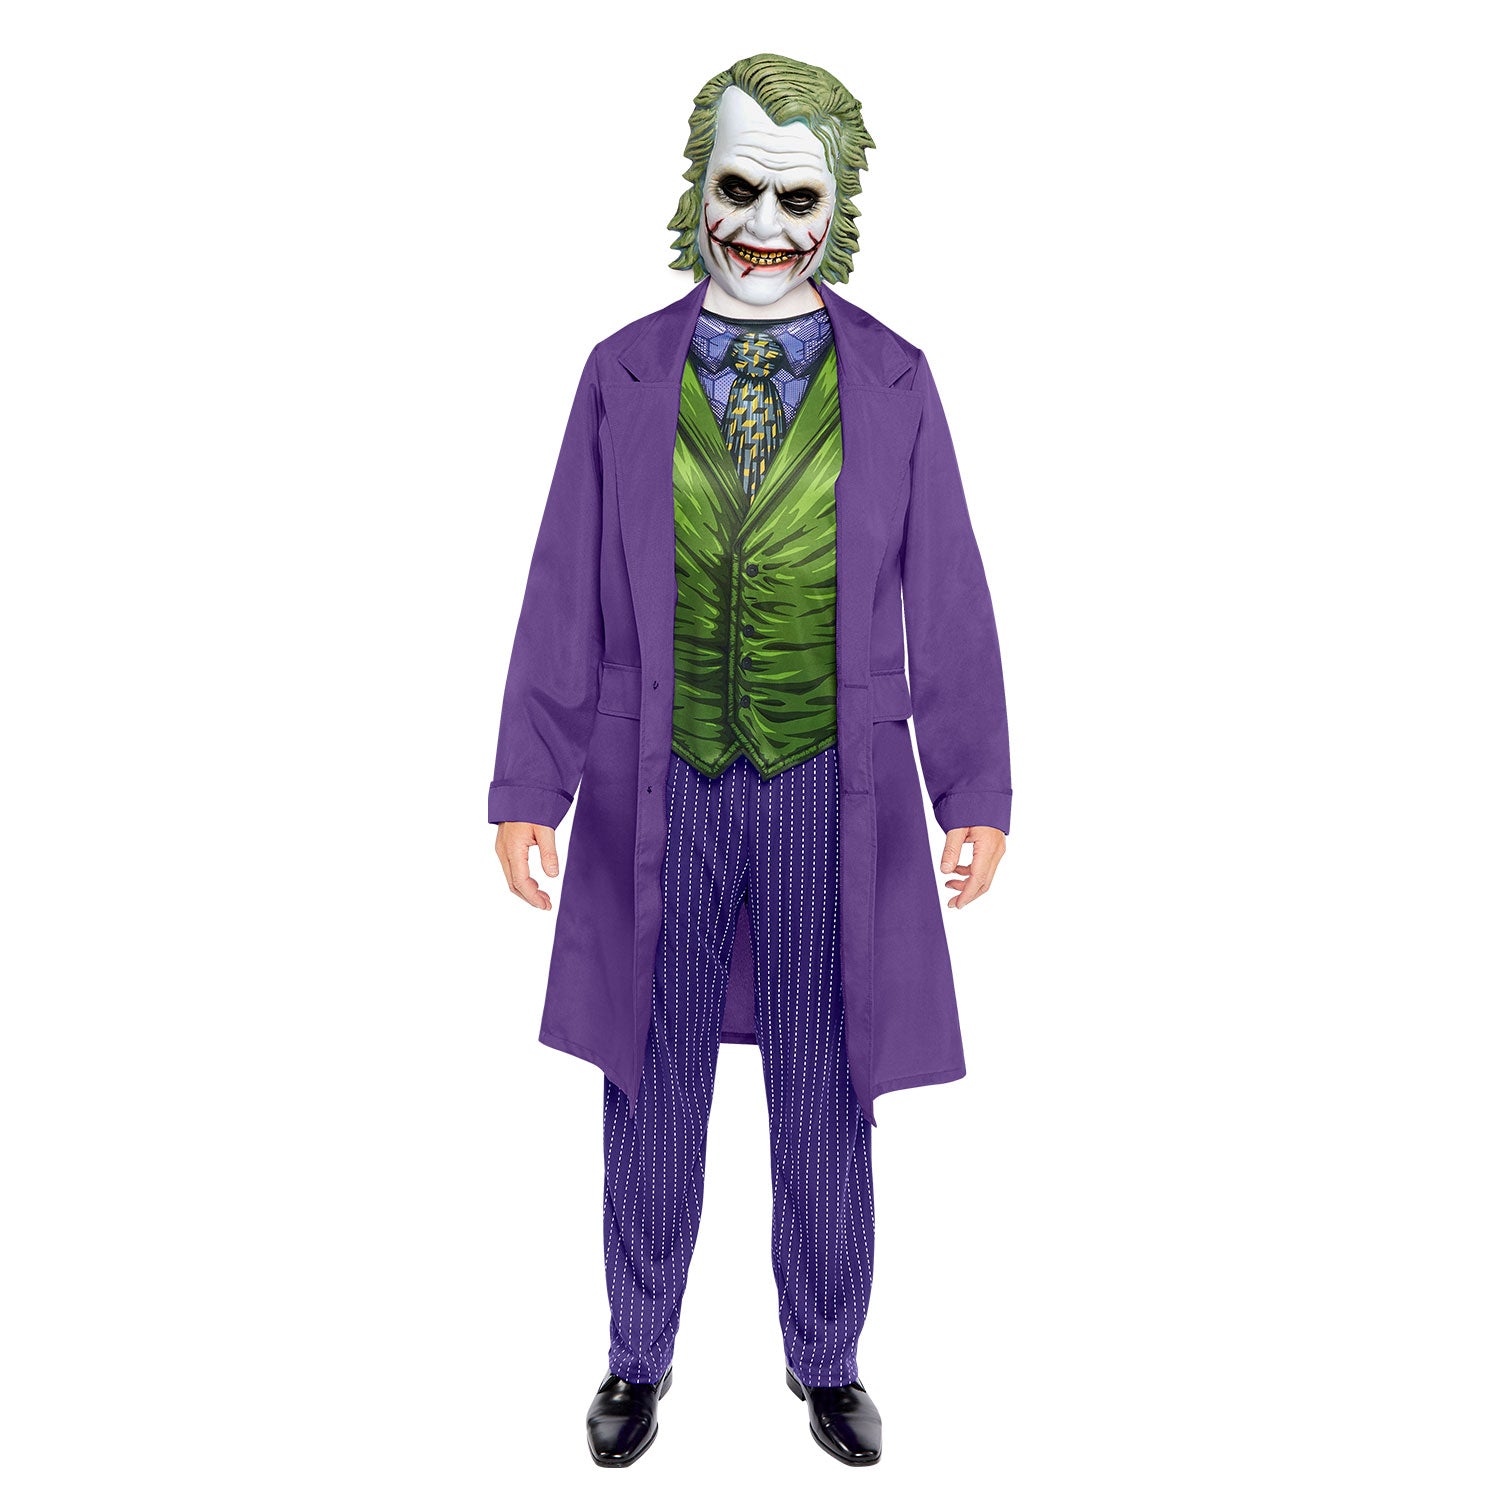 Joker Movie - Adult Costume